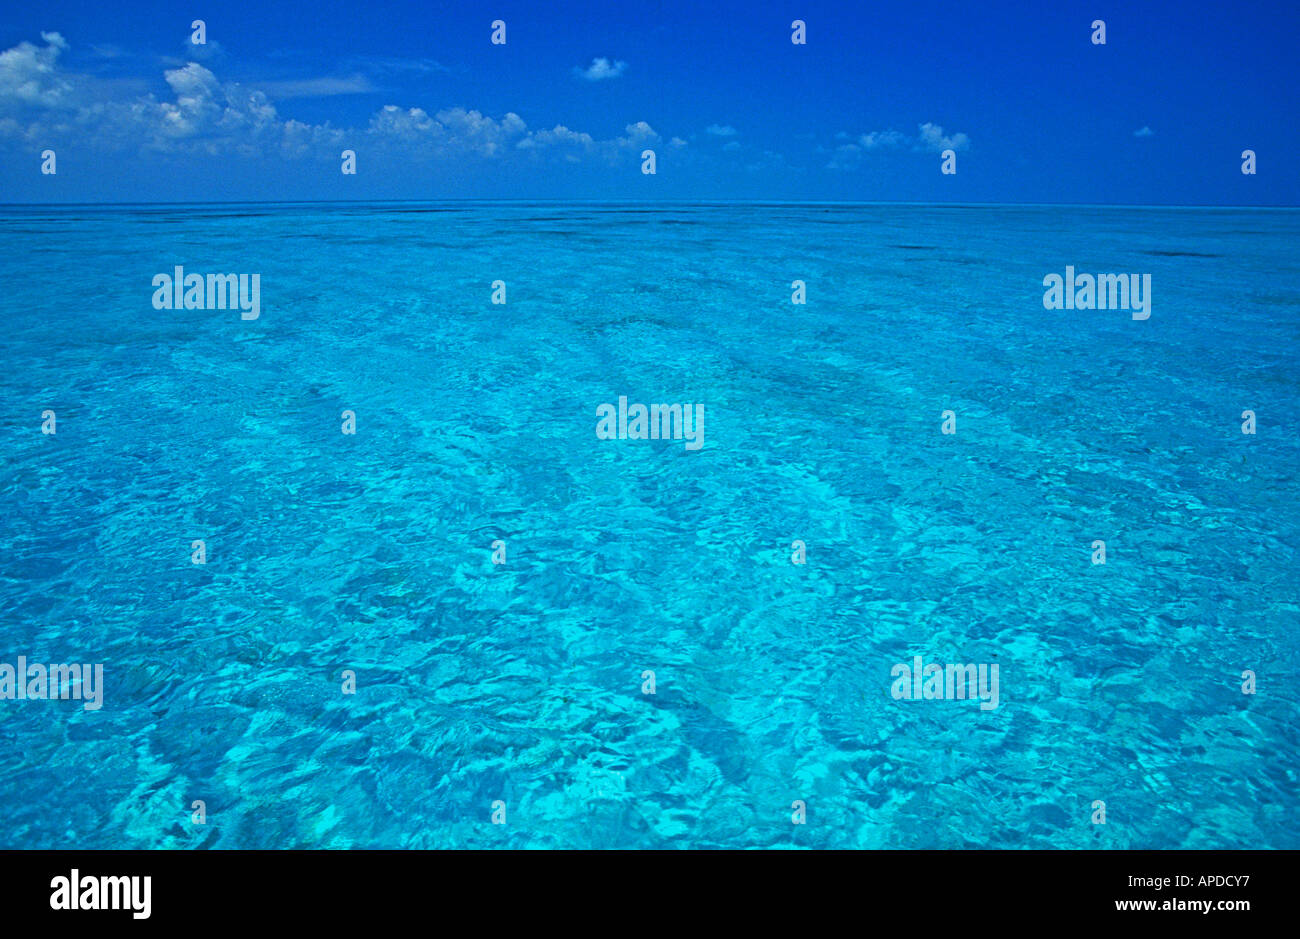 Tropen tropischen Wasser kristallklar sauber Türkis romantische Romantik weißen Sandboden und blauen Himmel dahinter helle Farben Stockfoto